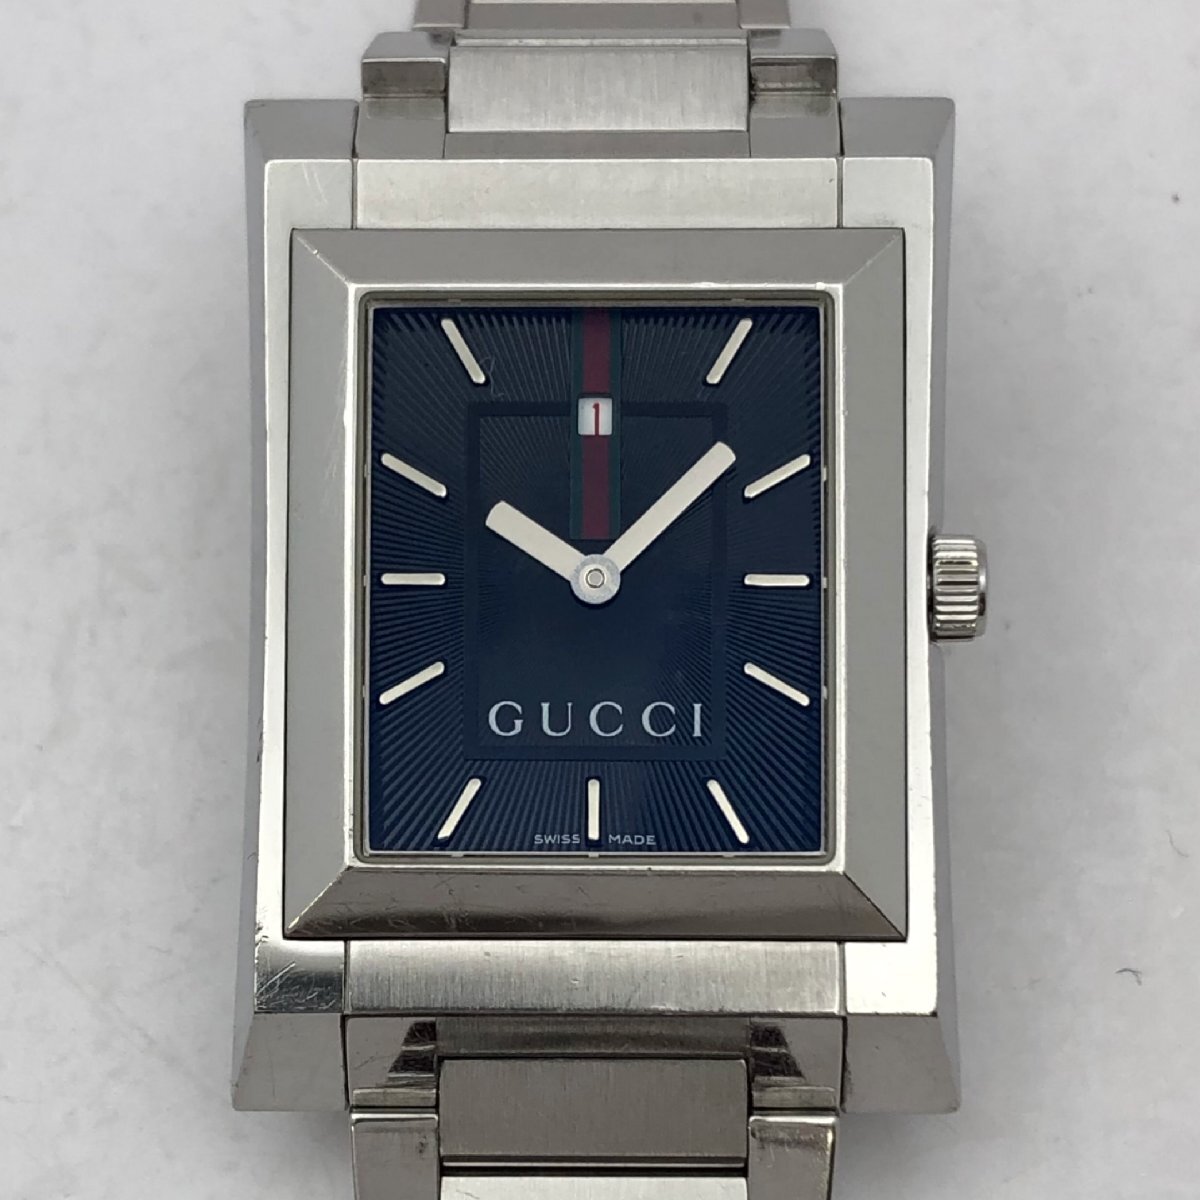 1 jpy ~/GUCCI/ Gucci /111M/ Sherry line / 2 hands / Date / silver color / square / quartz / men's wristwatch / Junk /T165